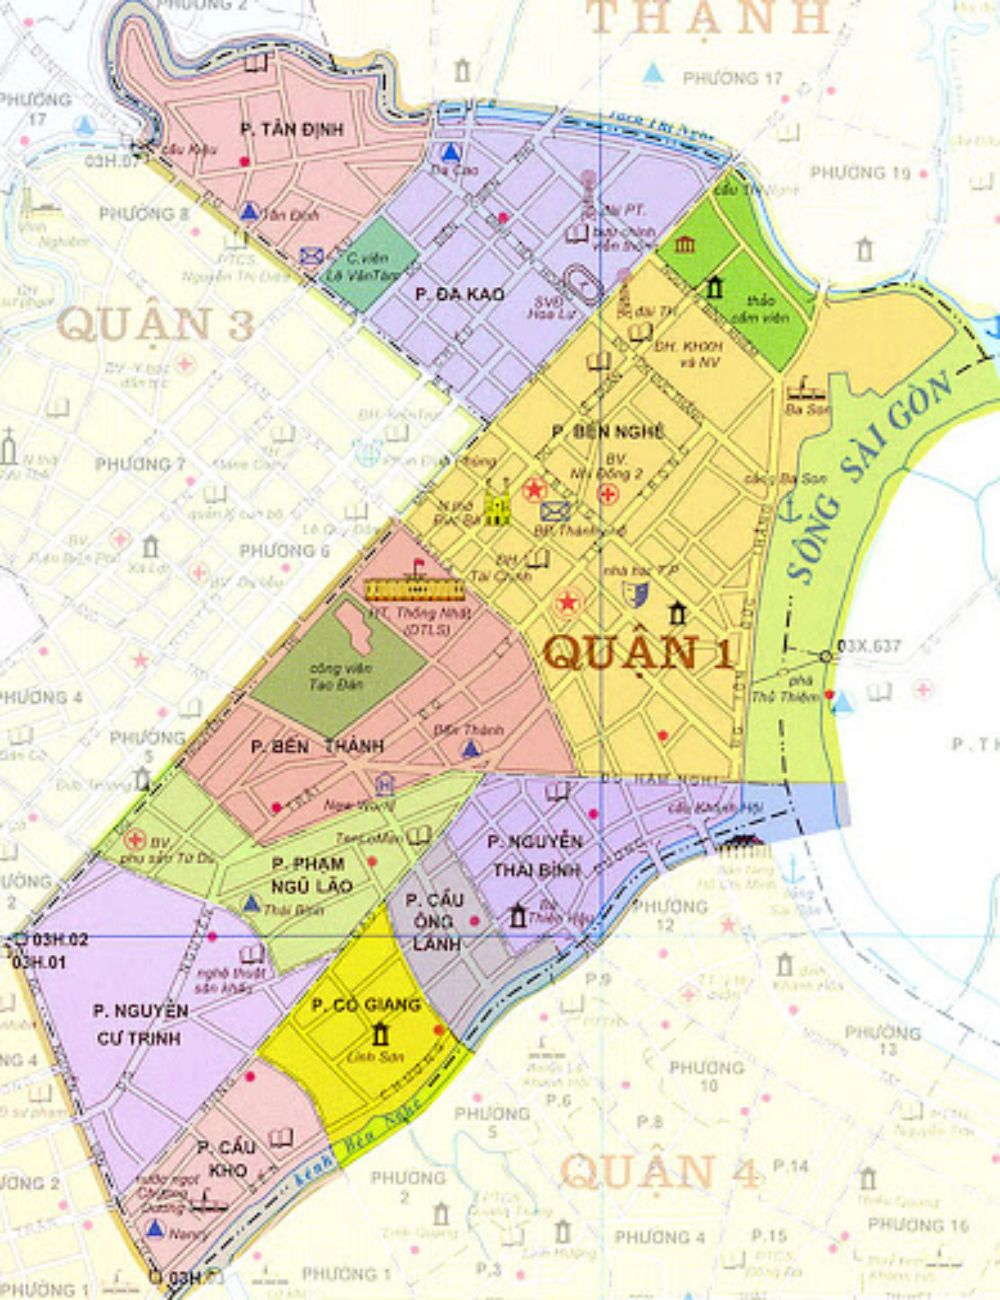 Bản đồ Sài Gòn các quận 2024: Khám phá bản đồ Sài Gòn 2024 để điều tra các quận và khu vực mới nhất của thành phố. Với việc mở rộng và phát triển các khu đô thị, đặc biệt là các trung tâm mua sắm, Sài Gòn đang ngày càng thu hút những cư dân mới và du khách đến tham quan. Cùng khám phá những điểm đáng chú ý trên bản đồ mới nhất của Sài Gòn!